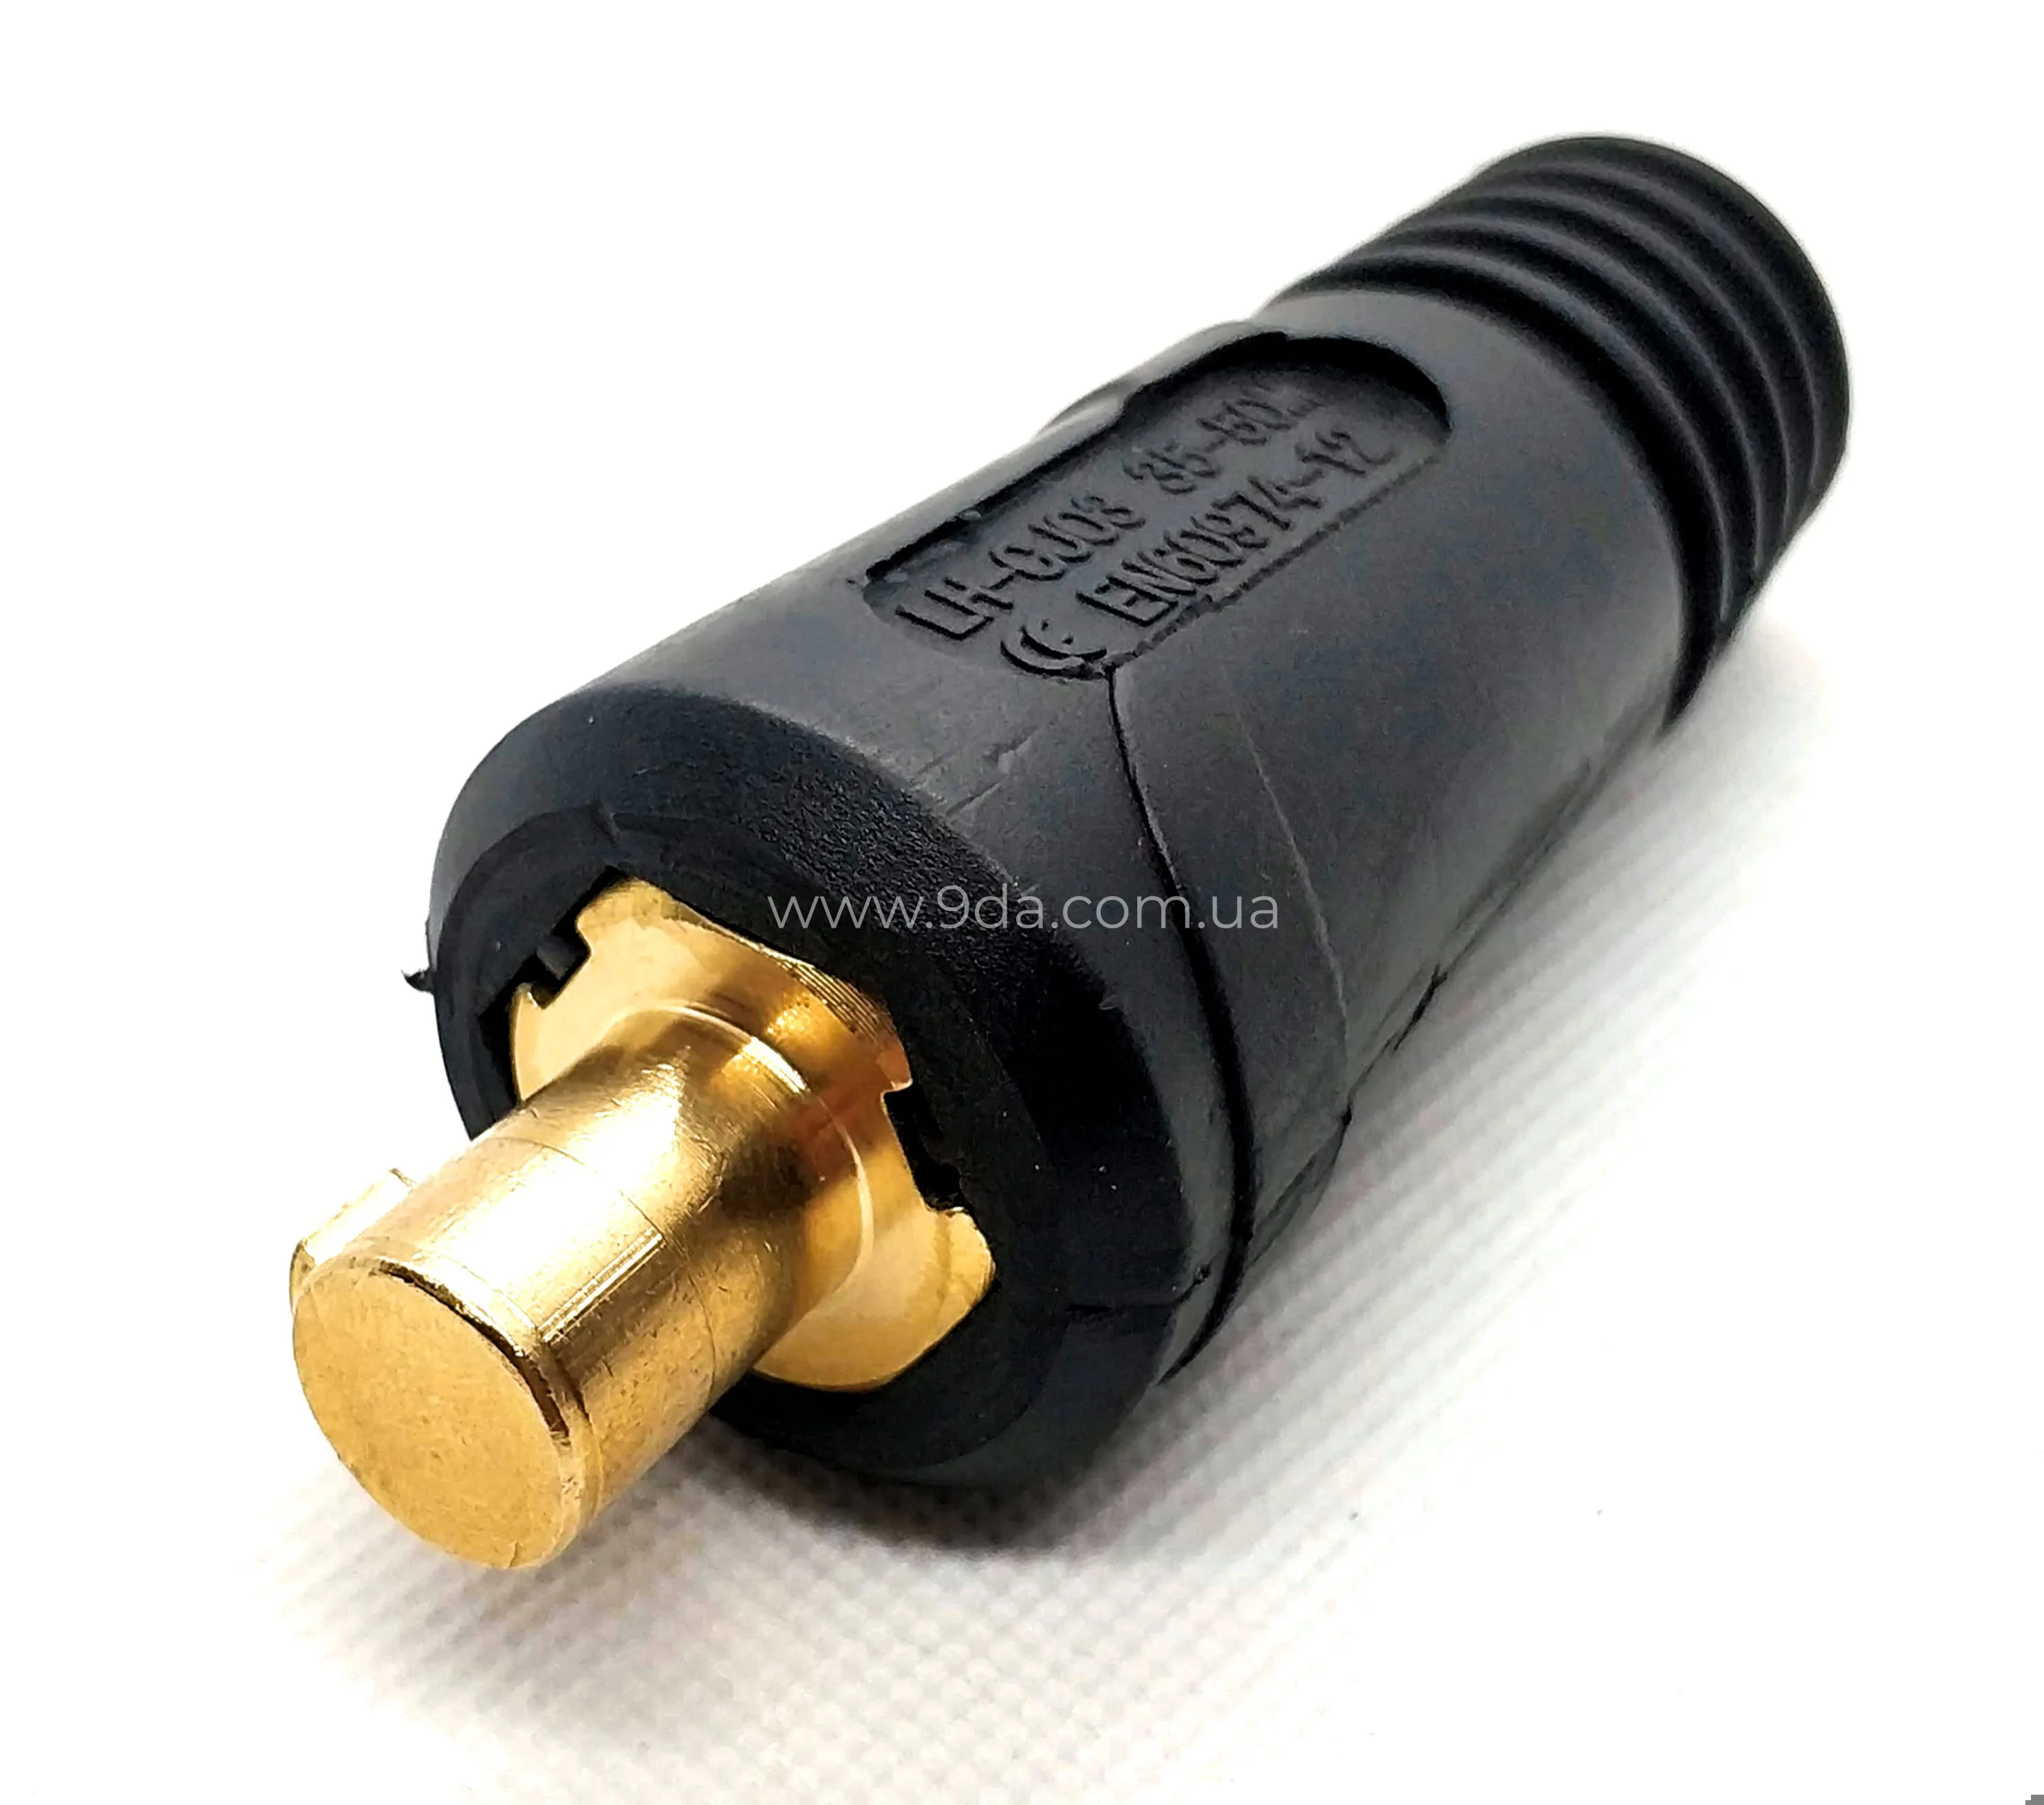 Штекер на кабель, байонентний ABI-CM / BSB 35-50мм, ф12,7мм (511.0315K), KWeld - 2